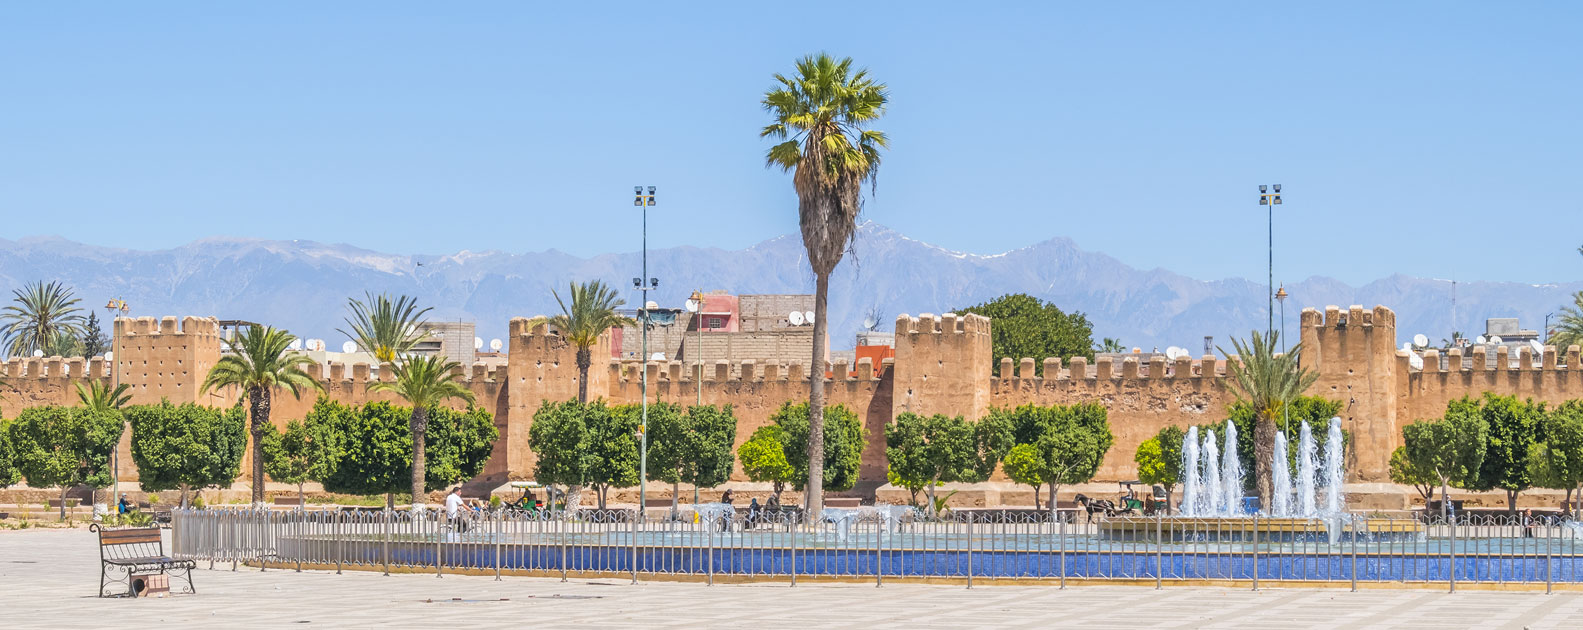 Taroudant, the little Marrakech